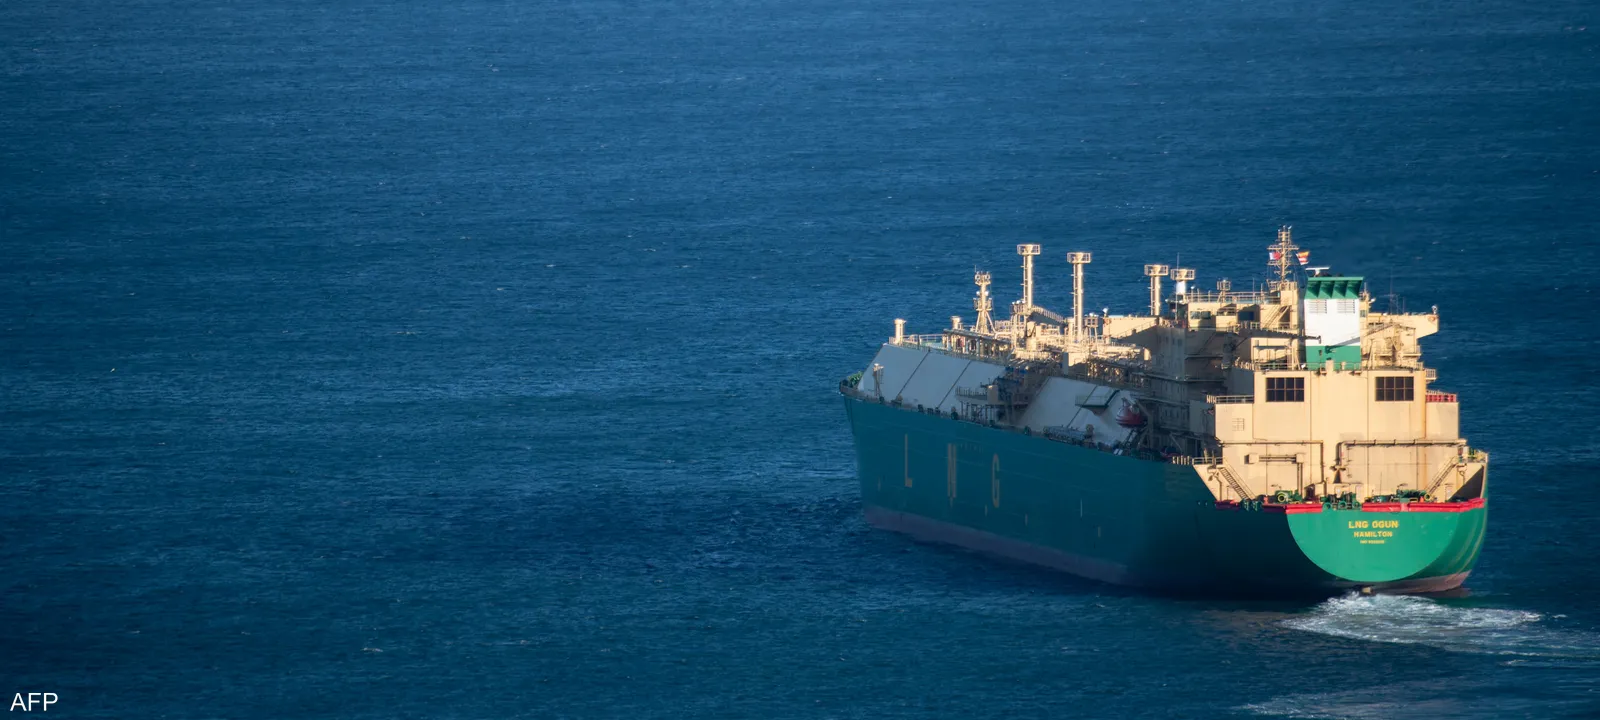 سفينة لتصدير الغاز تصدير الغاز الطبيعي